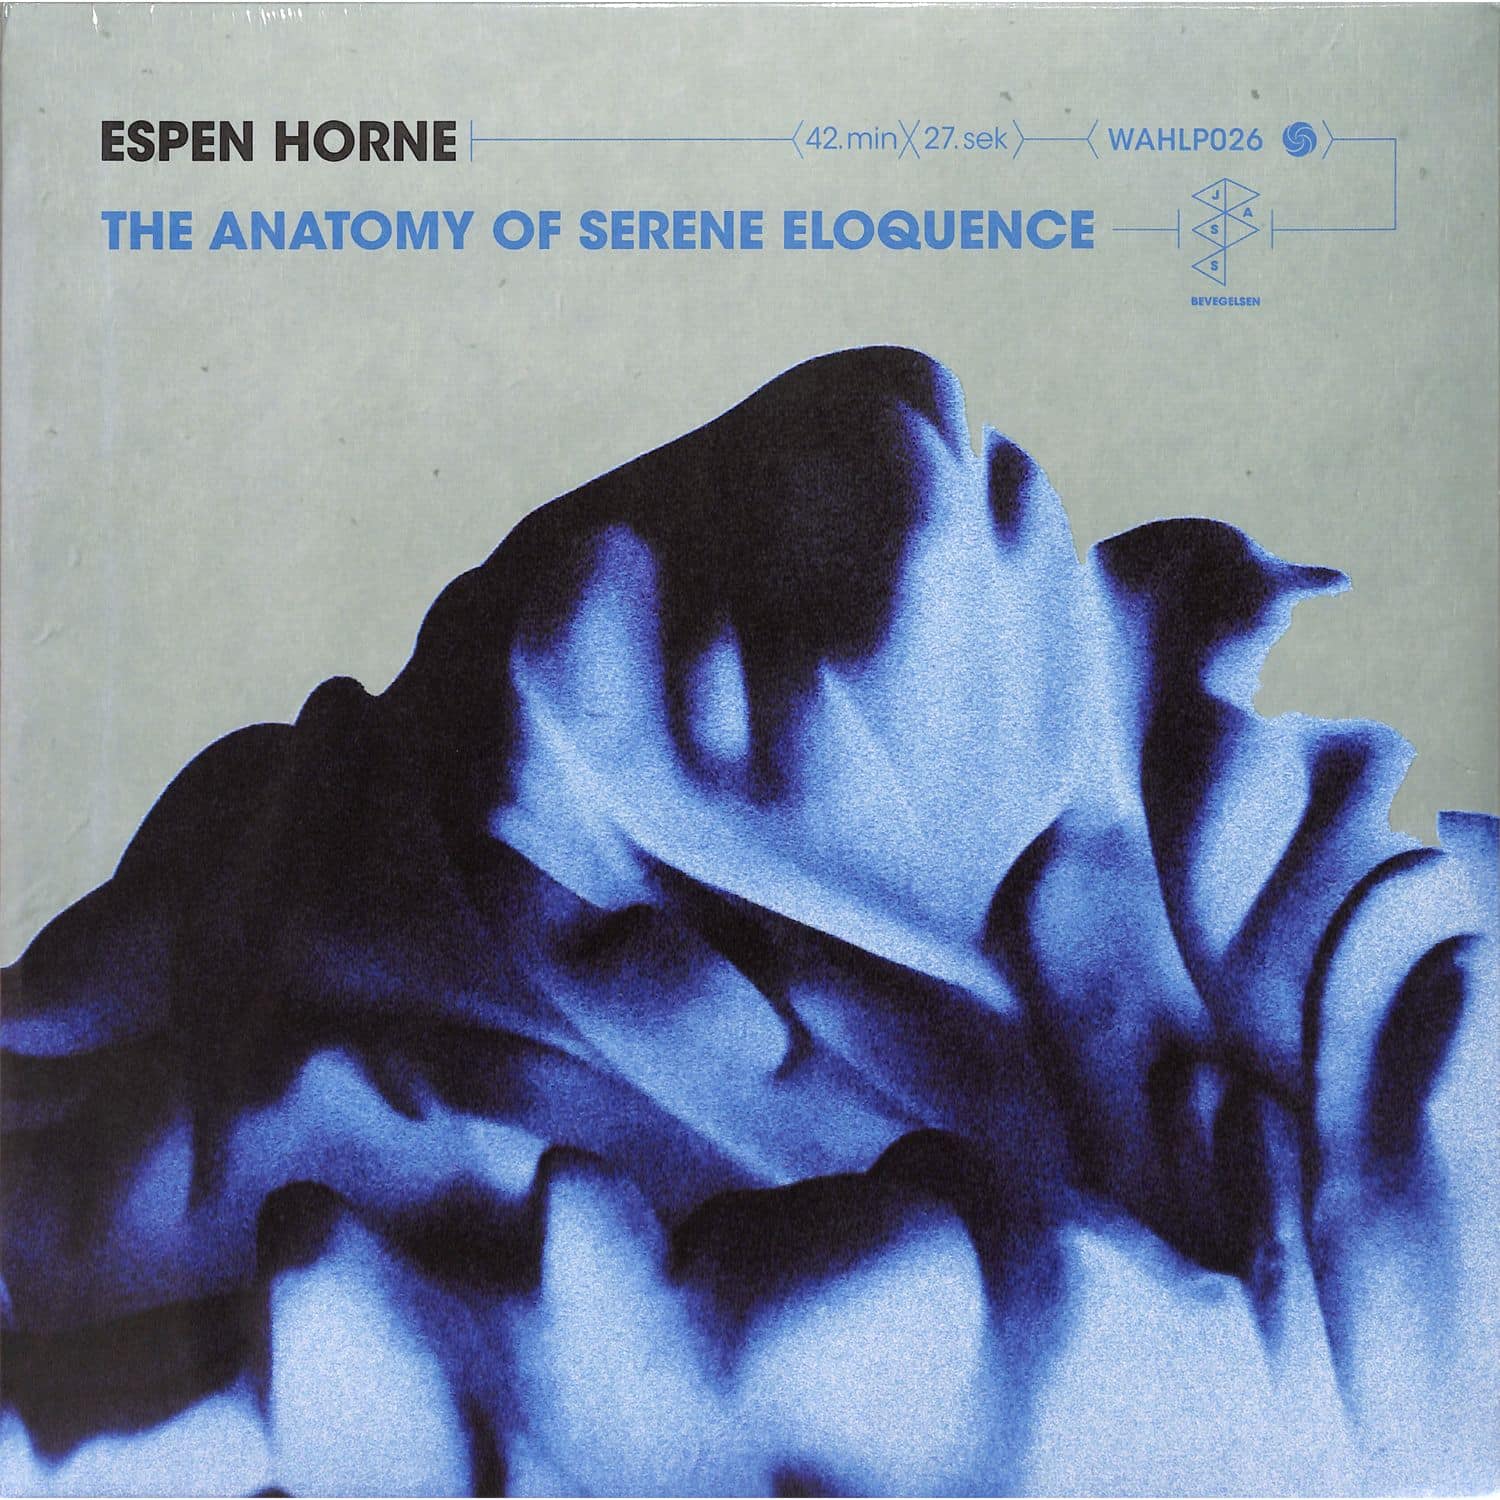 Espen Horne - THE ANATOMY OF SERENE ELOQUENCE 